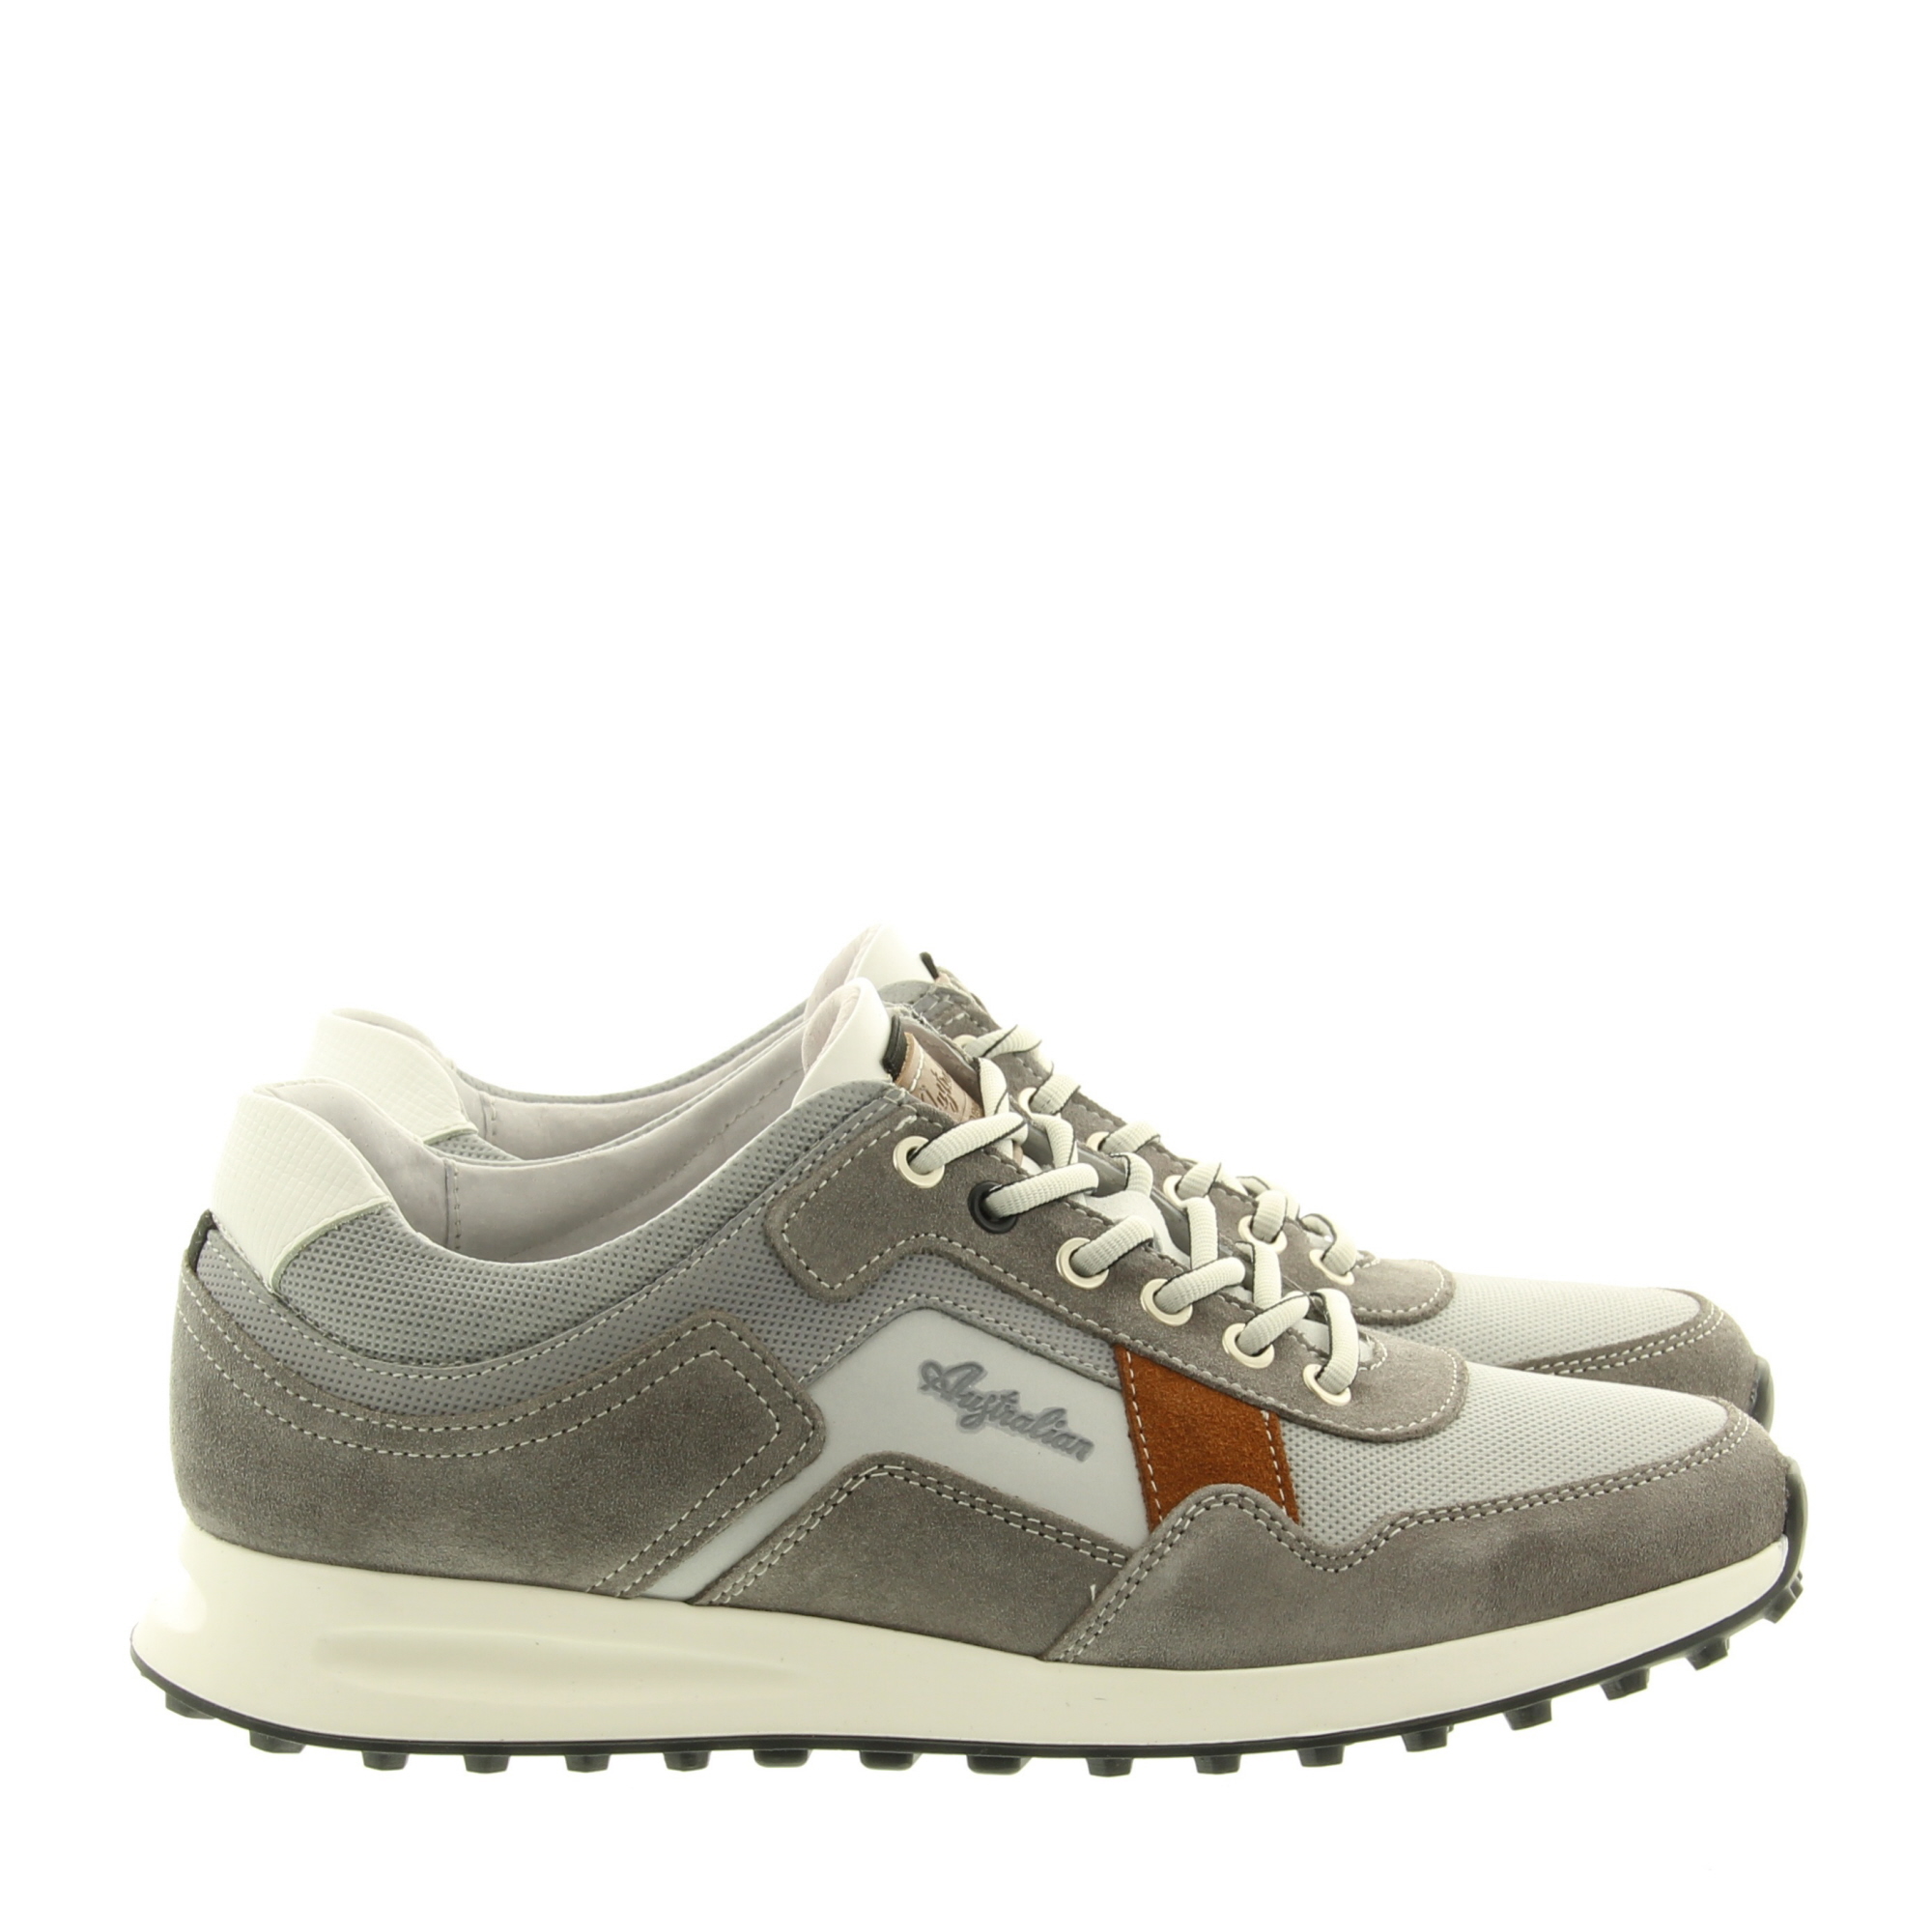 Australian Footwear Rebound 15.1544.02 KH0 Light Grey White Brick